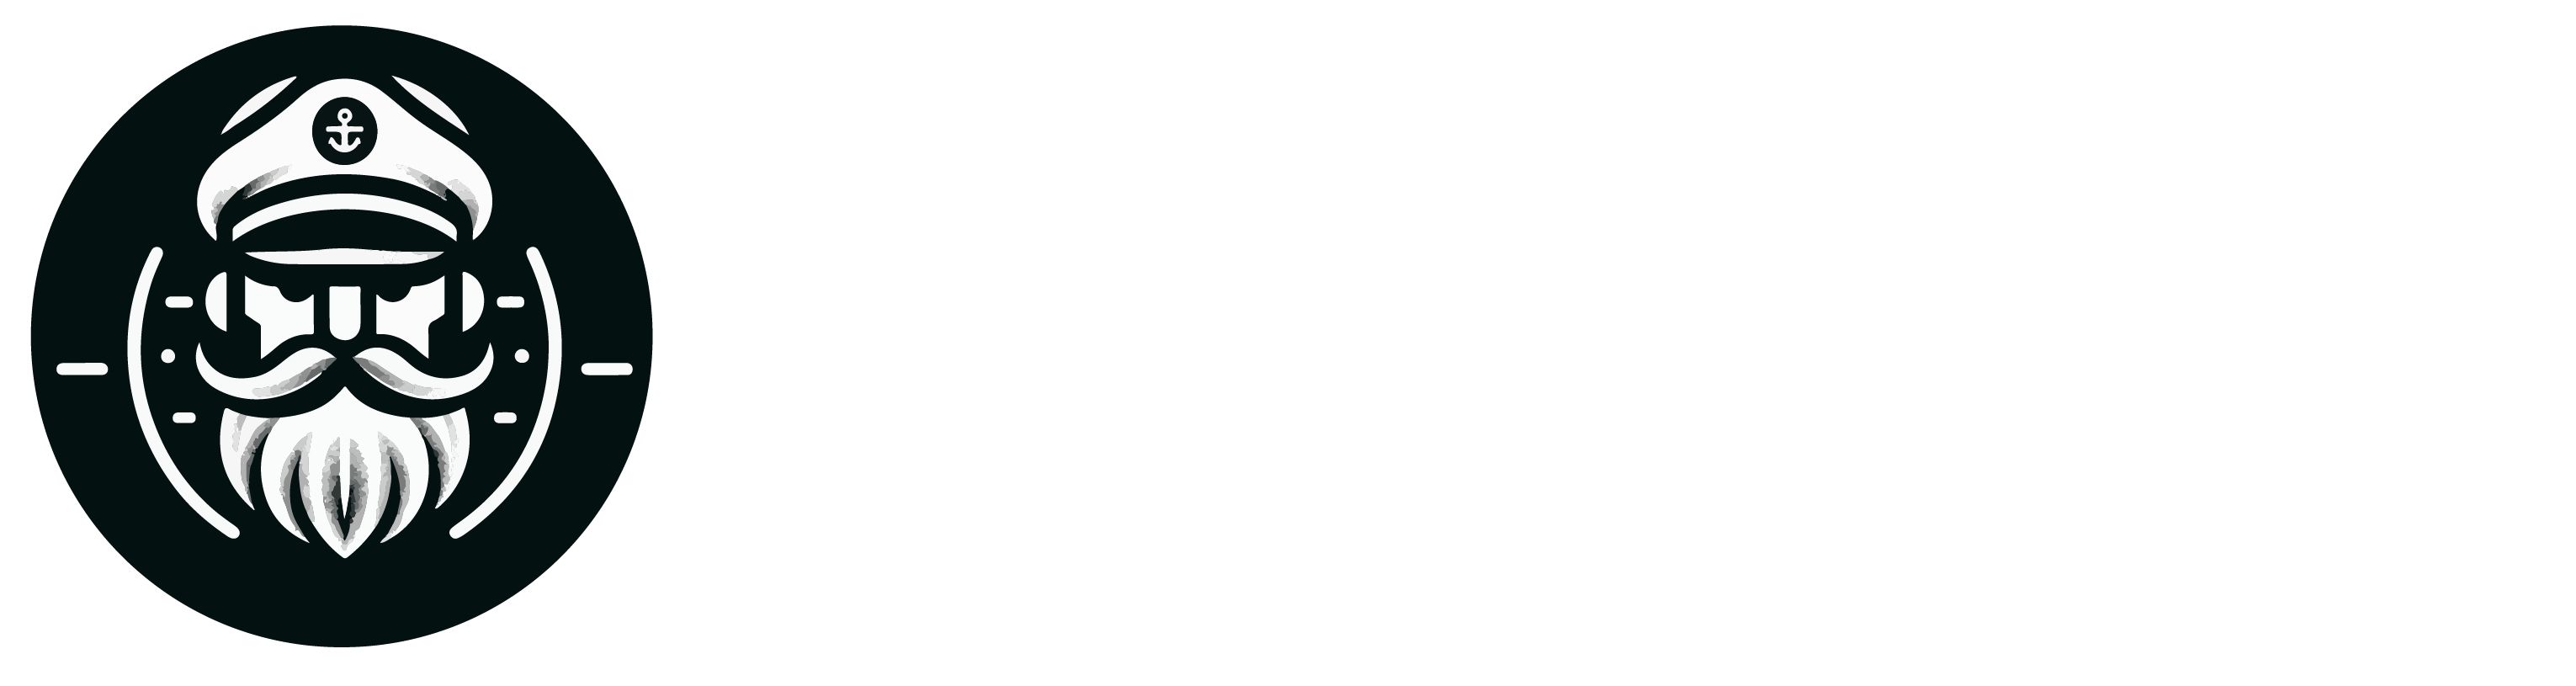 Helmsman Agency